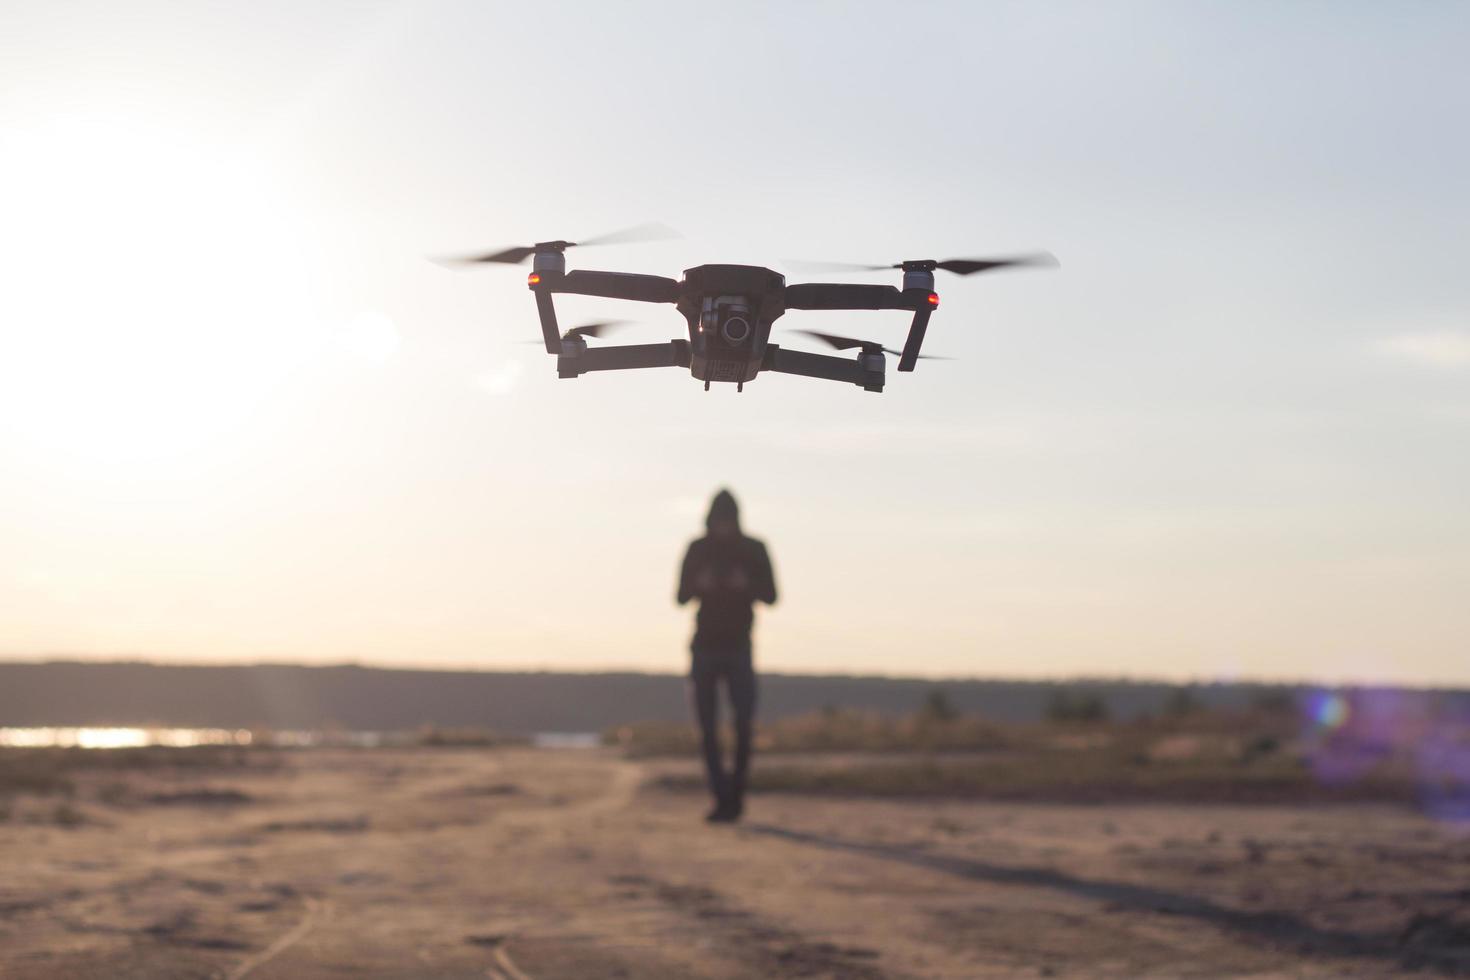 bild av svart flådande quadrocopter dron och pilot siluette i solnedgång ljus bakgrund, turist användning dron helikopter för att fotografera eller filma ökenlandskap foto